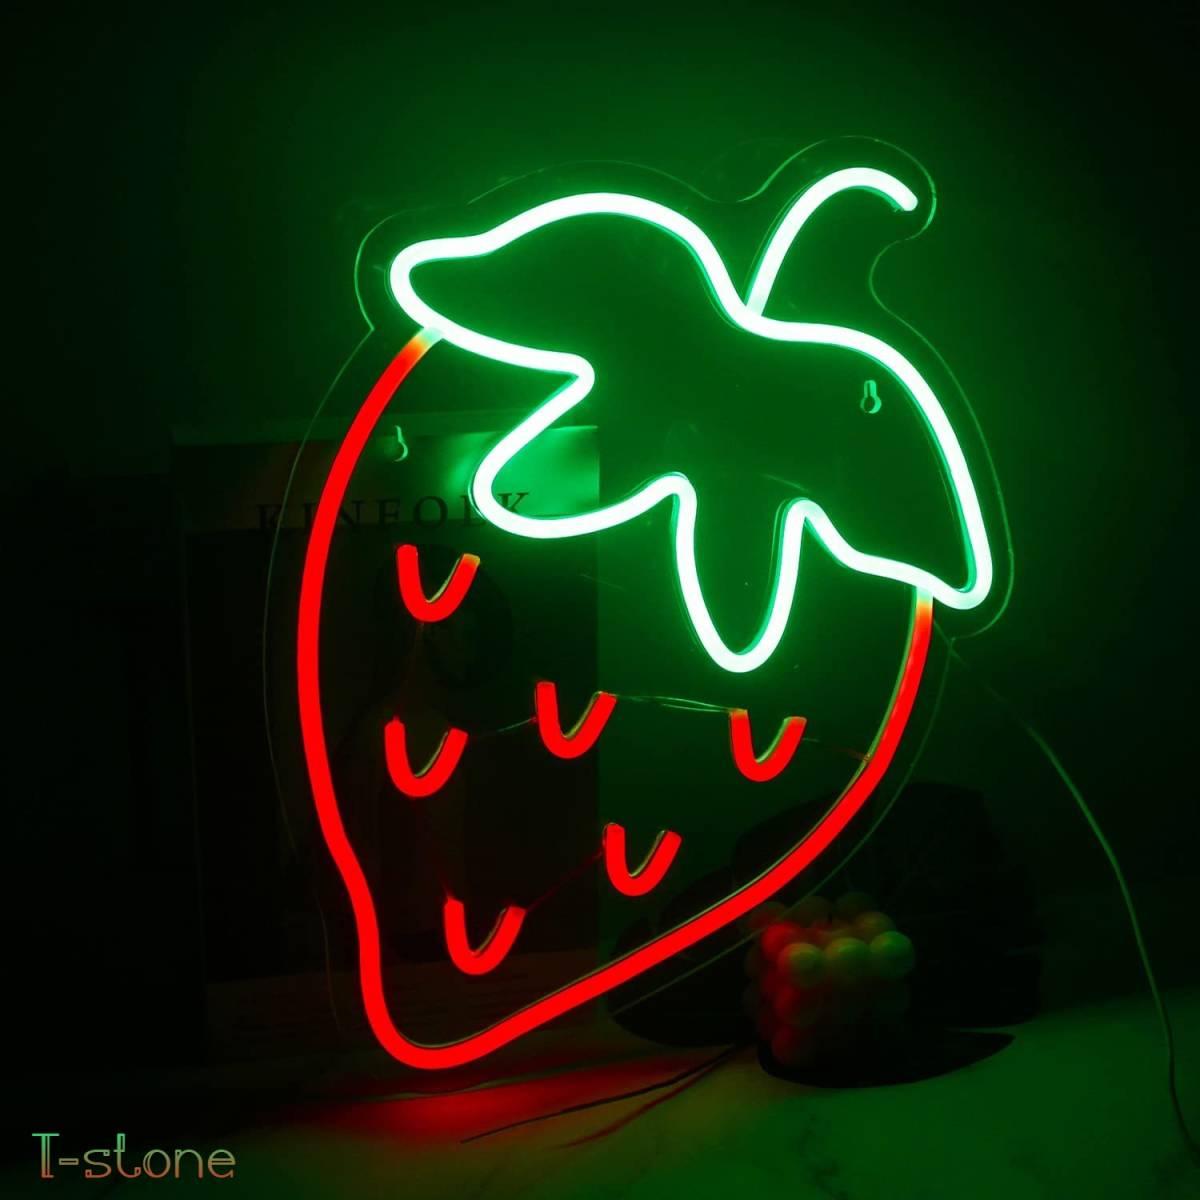 ネオンサイン かわいい苺のネオン看板 ストロベリー 緑 赤 存在感抜群 ルームデコレーション LEDイルミネーション ナイトライト 雰囲気作り